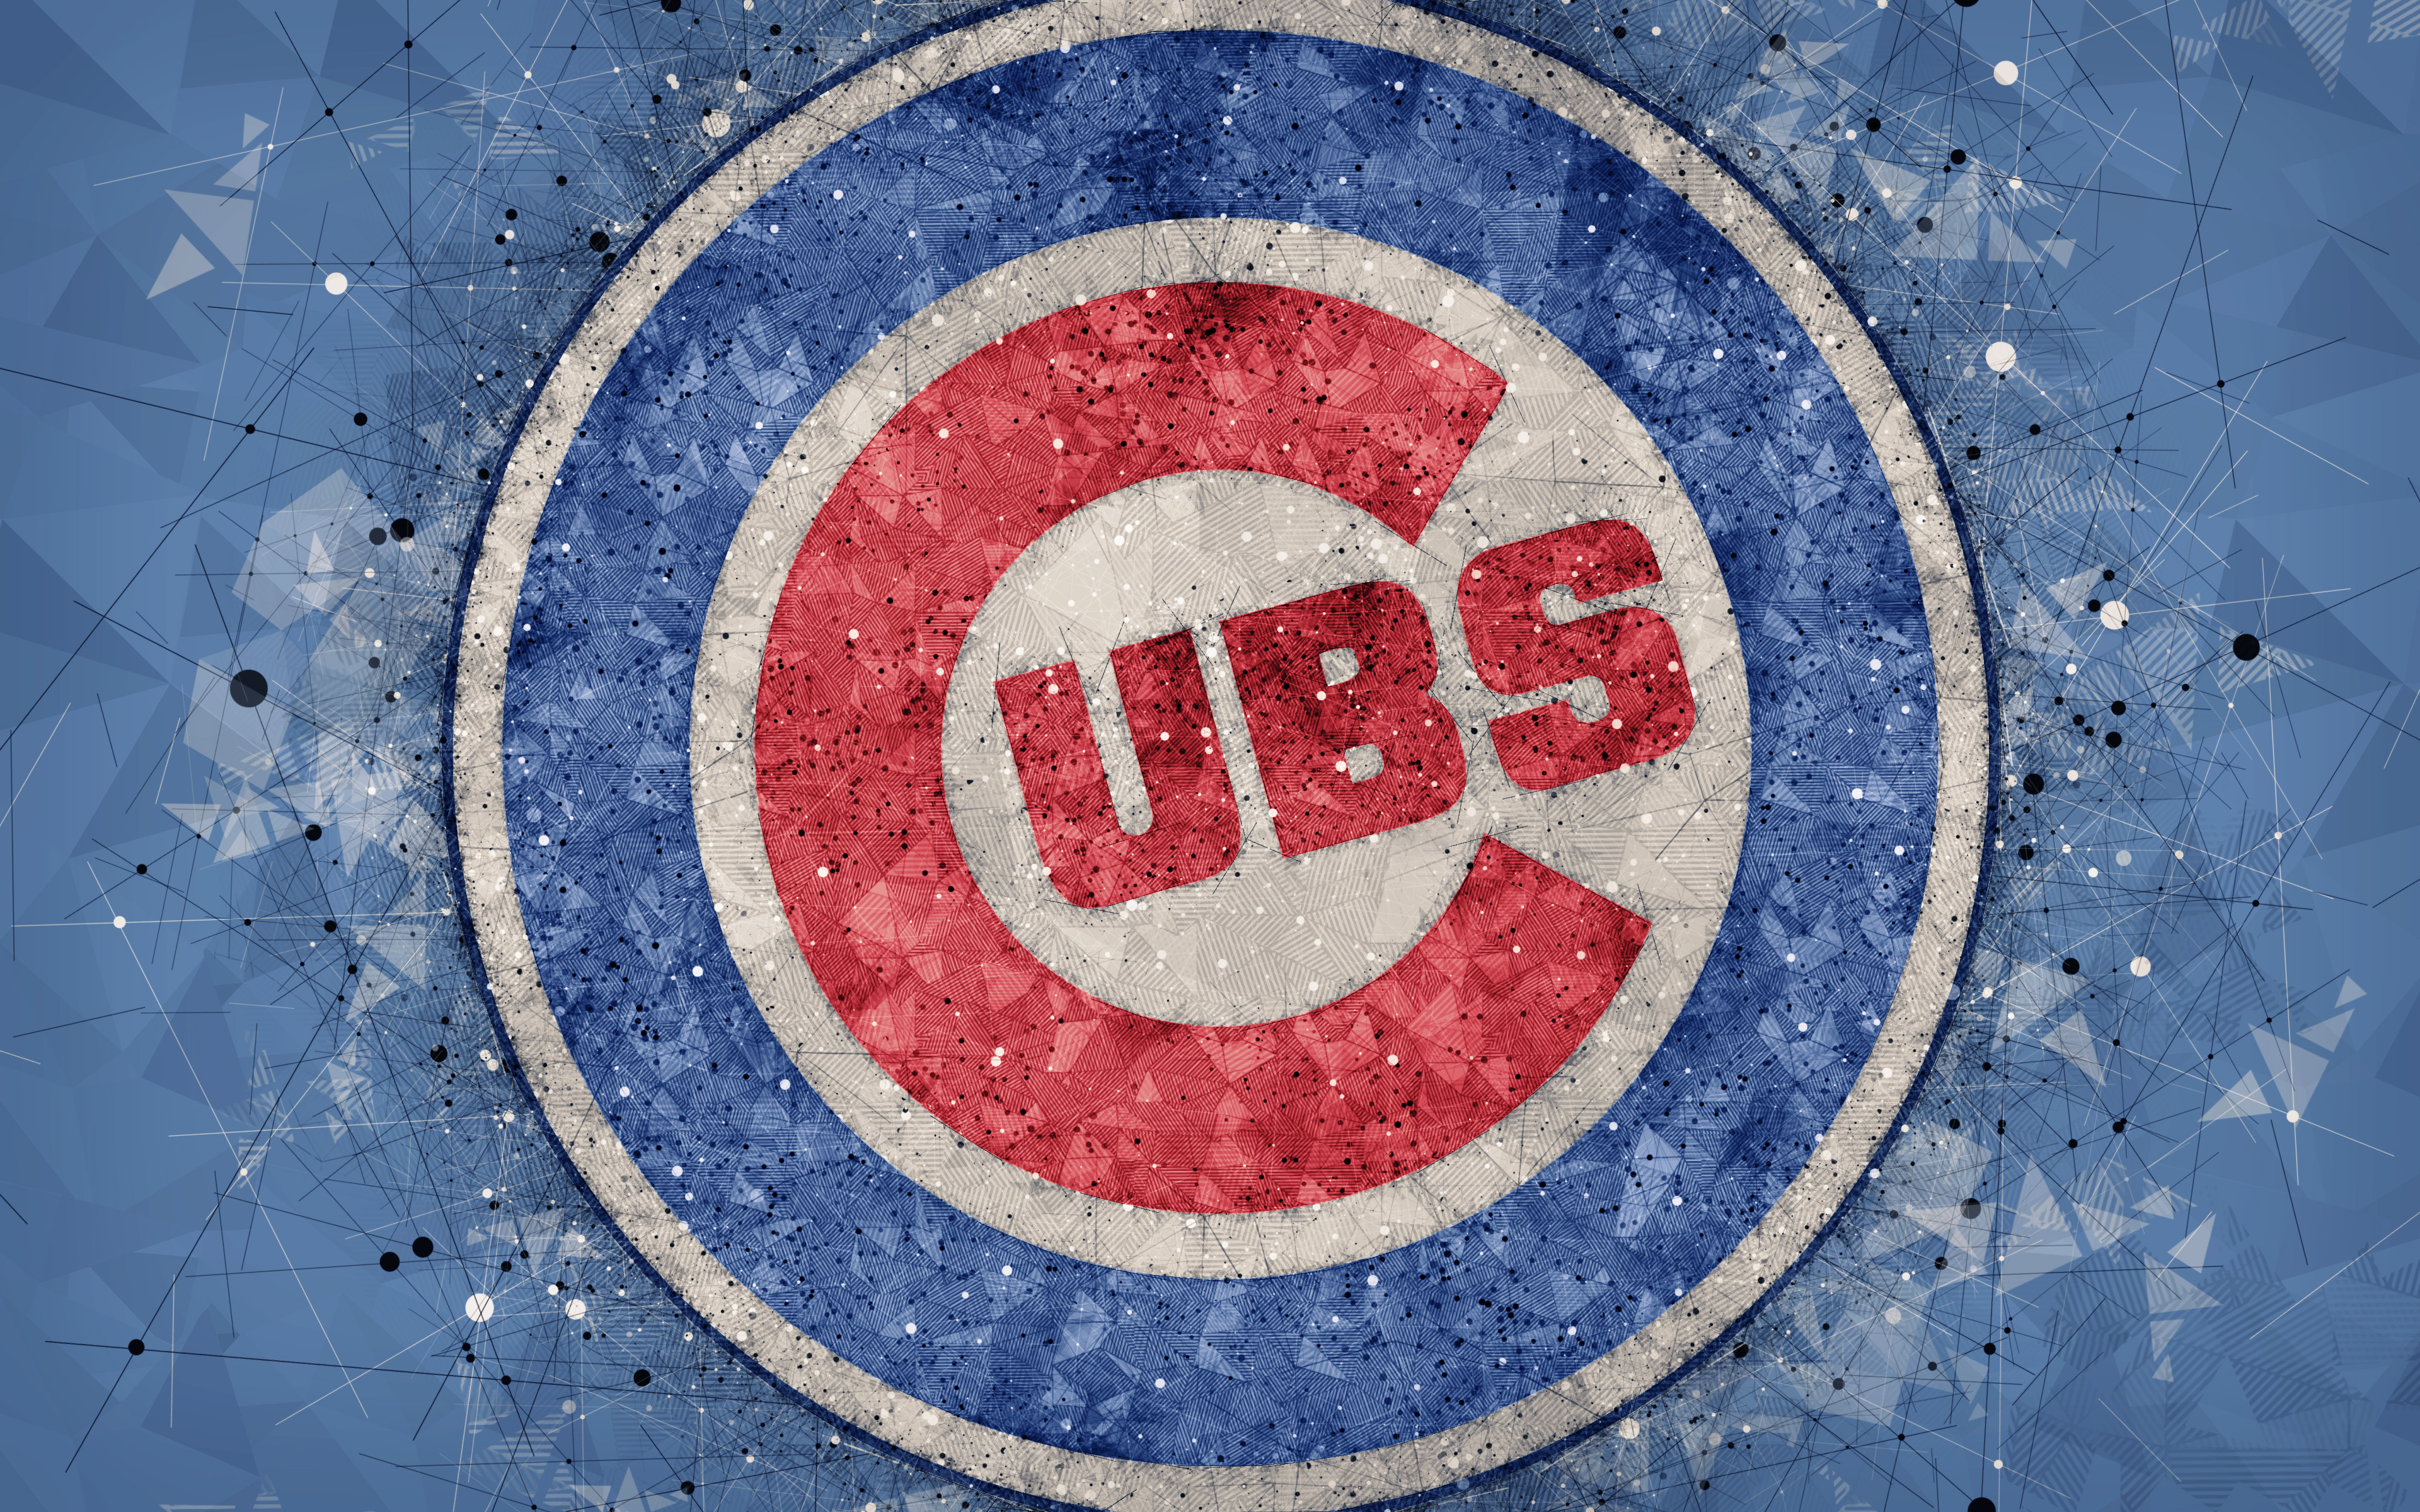 Chicago Cubs 4k Ultra HD Wallpaper